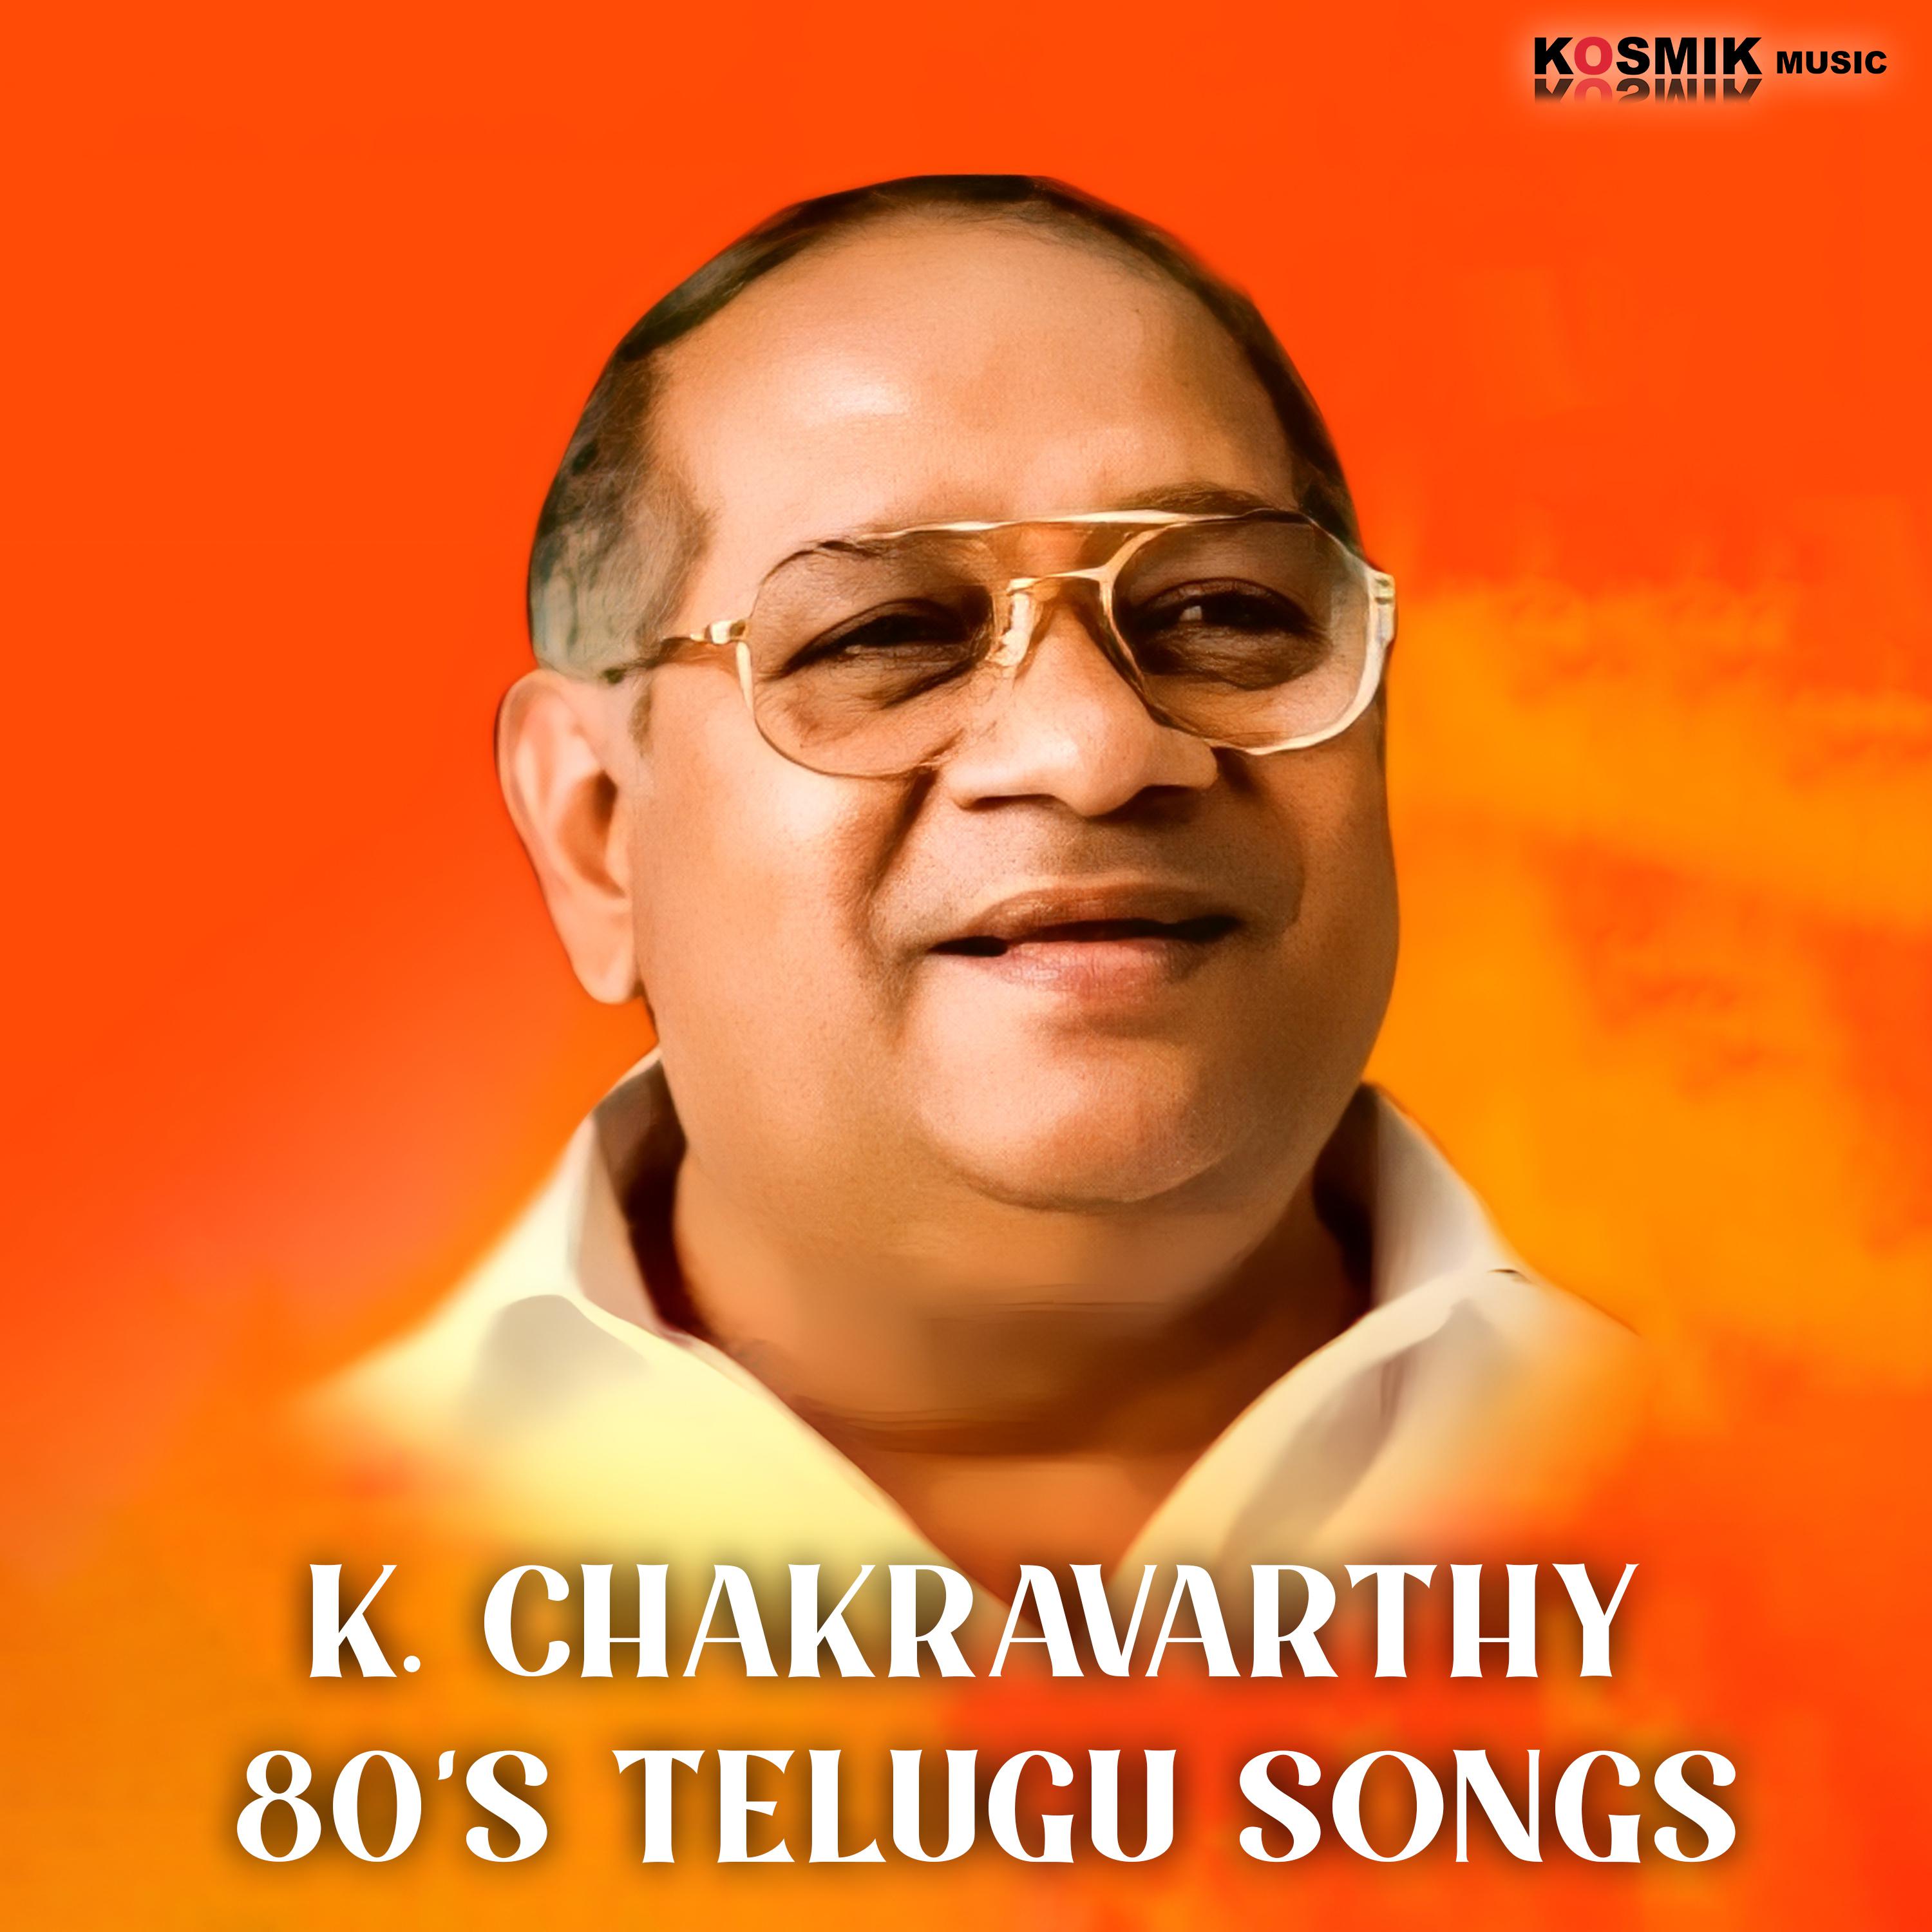 K. Chakravarthy - Saligali Veepindi (From 